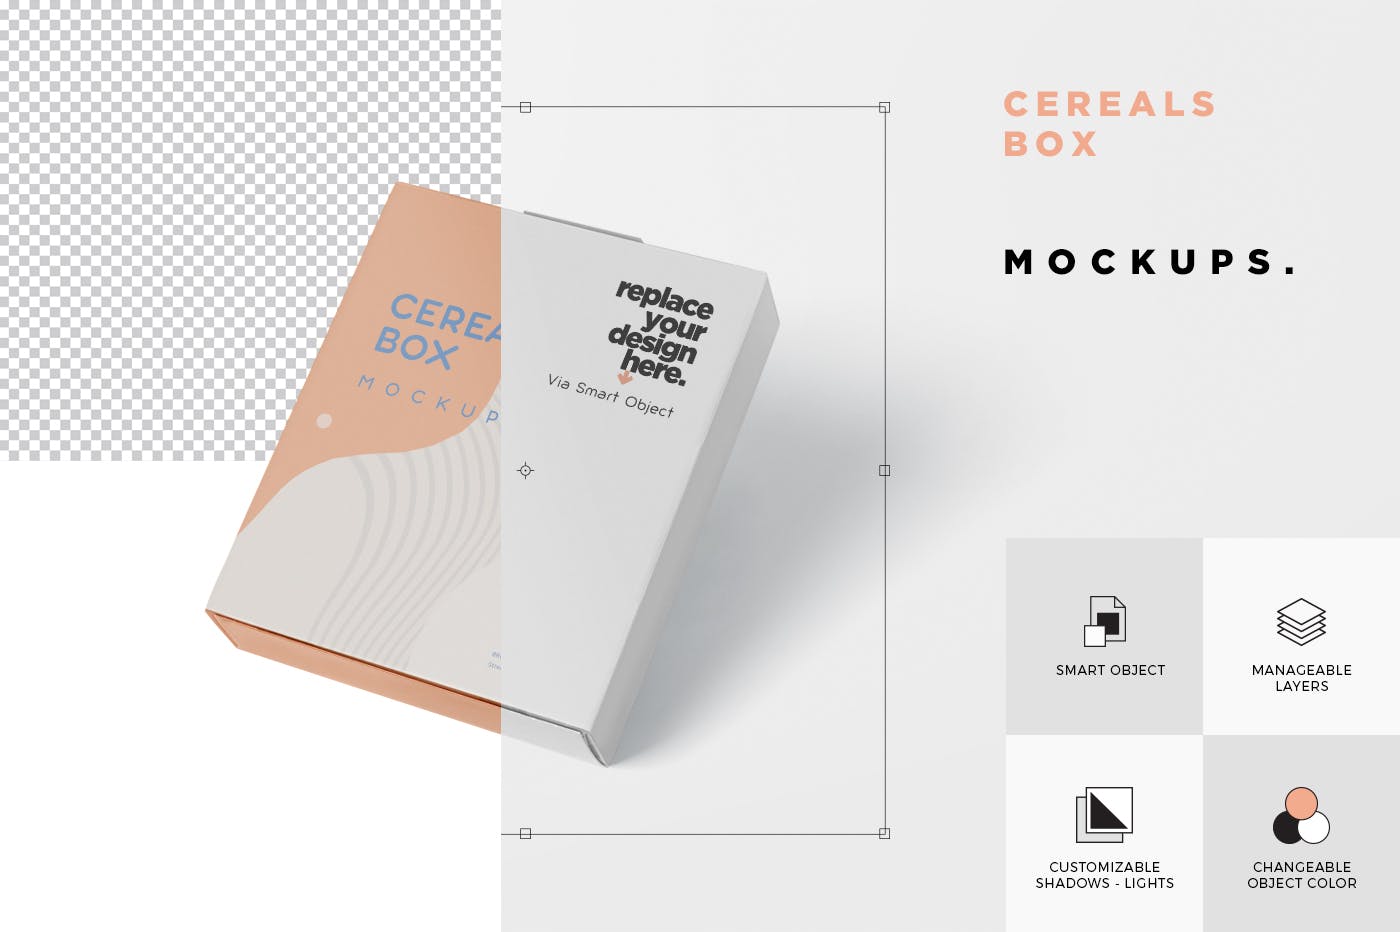 麦片盒包装外观设计样机模板 Cereals Box Mockup插图(5)